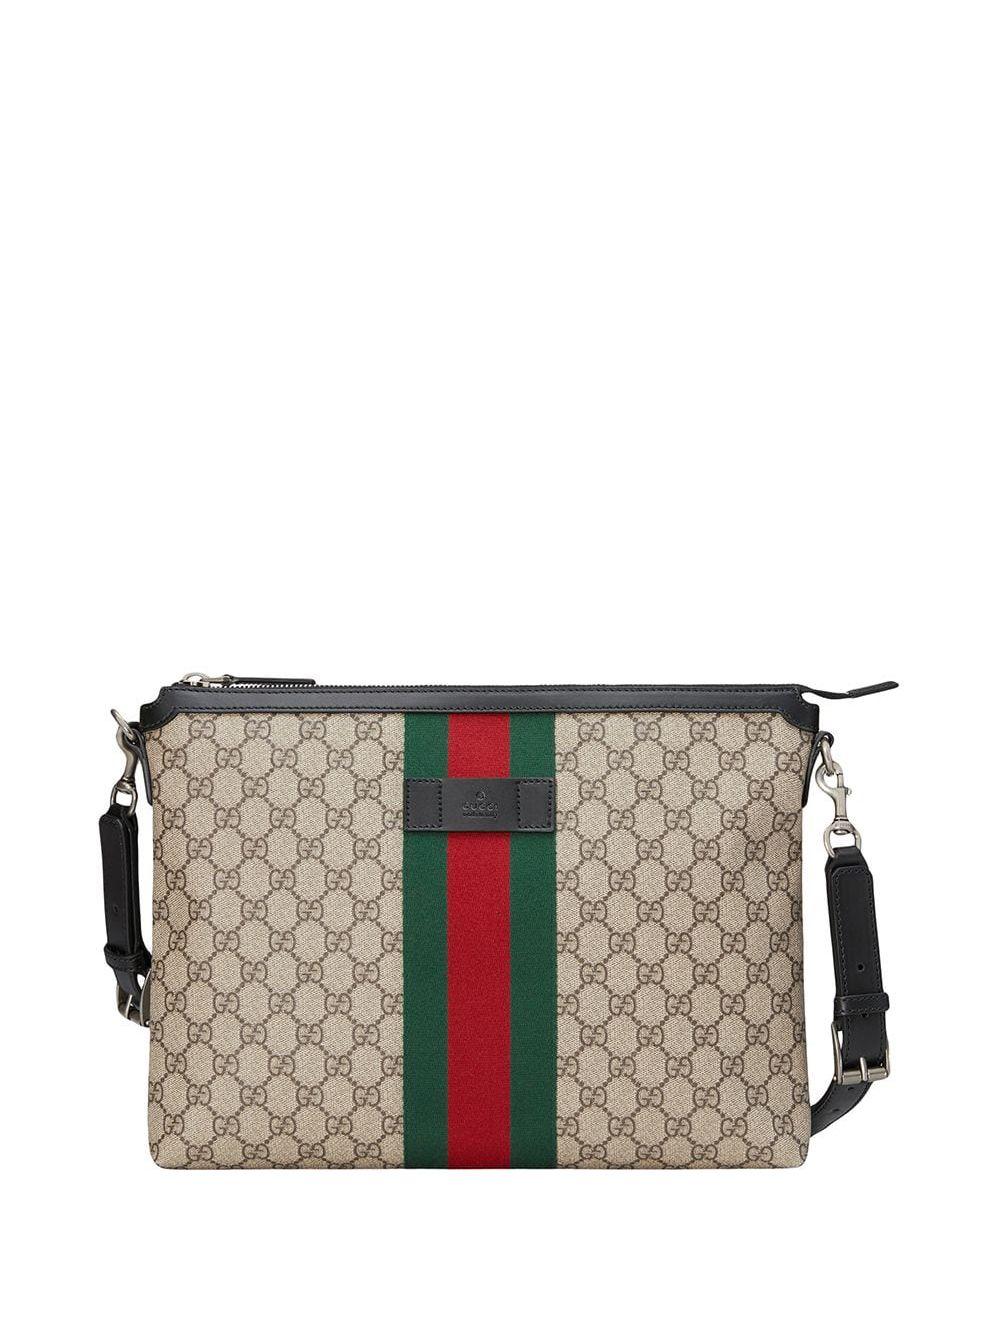 Gucci GG Supreme Medium Messenger Bag for Men - Lyst